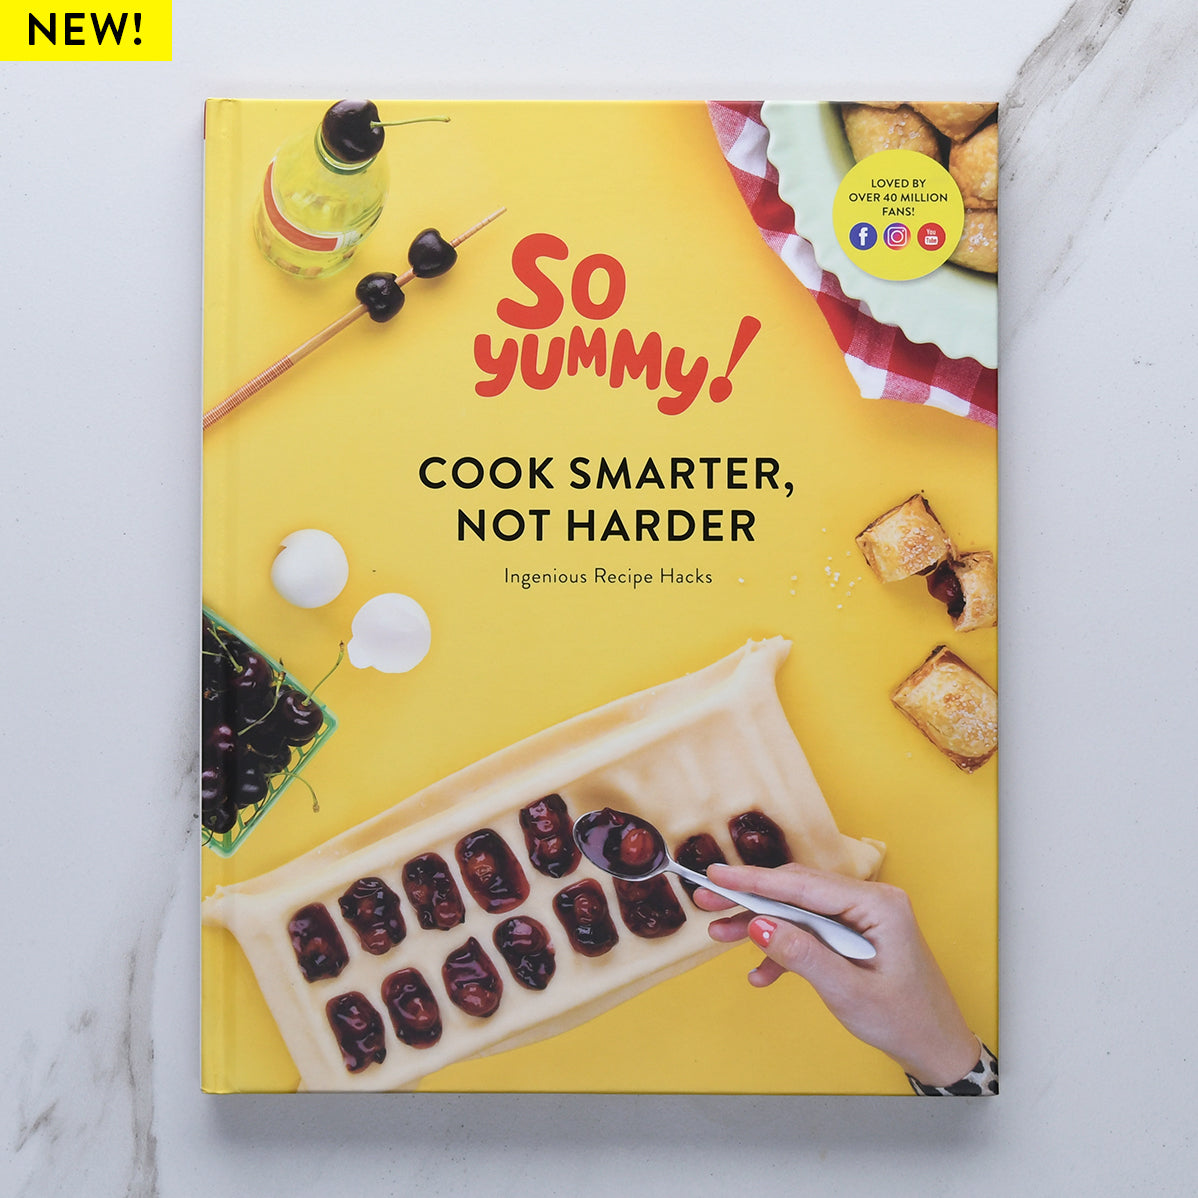 Image of Cook Smarter, Not Harder Cookbook